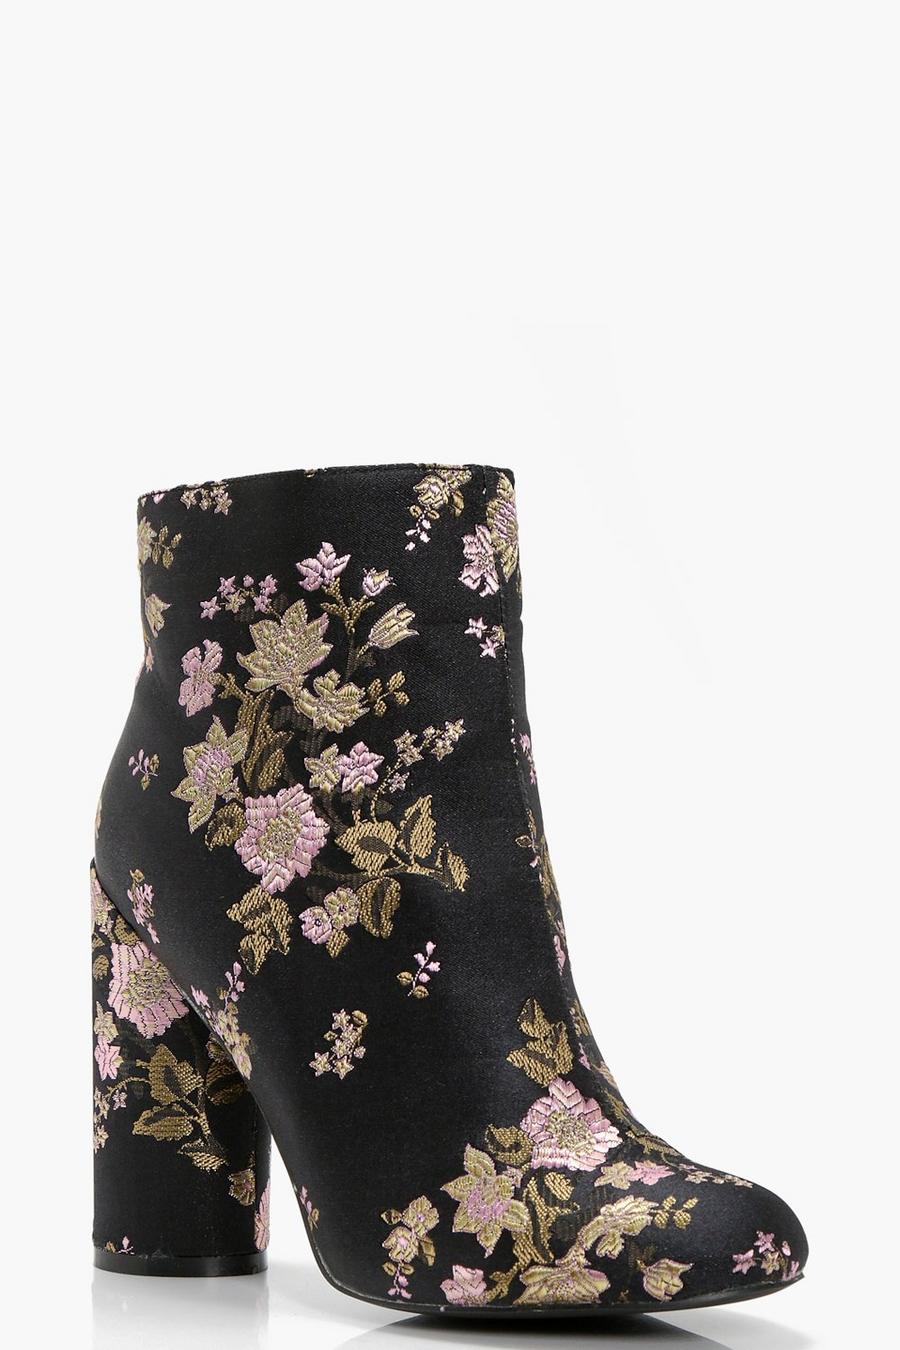 Black Floral Embroidered Cylinder Heel Boots image number 1